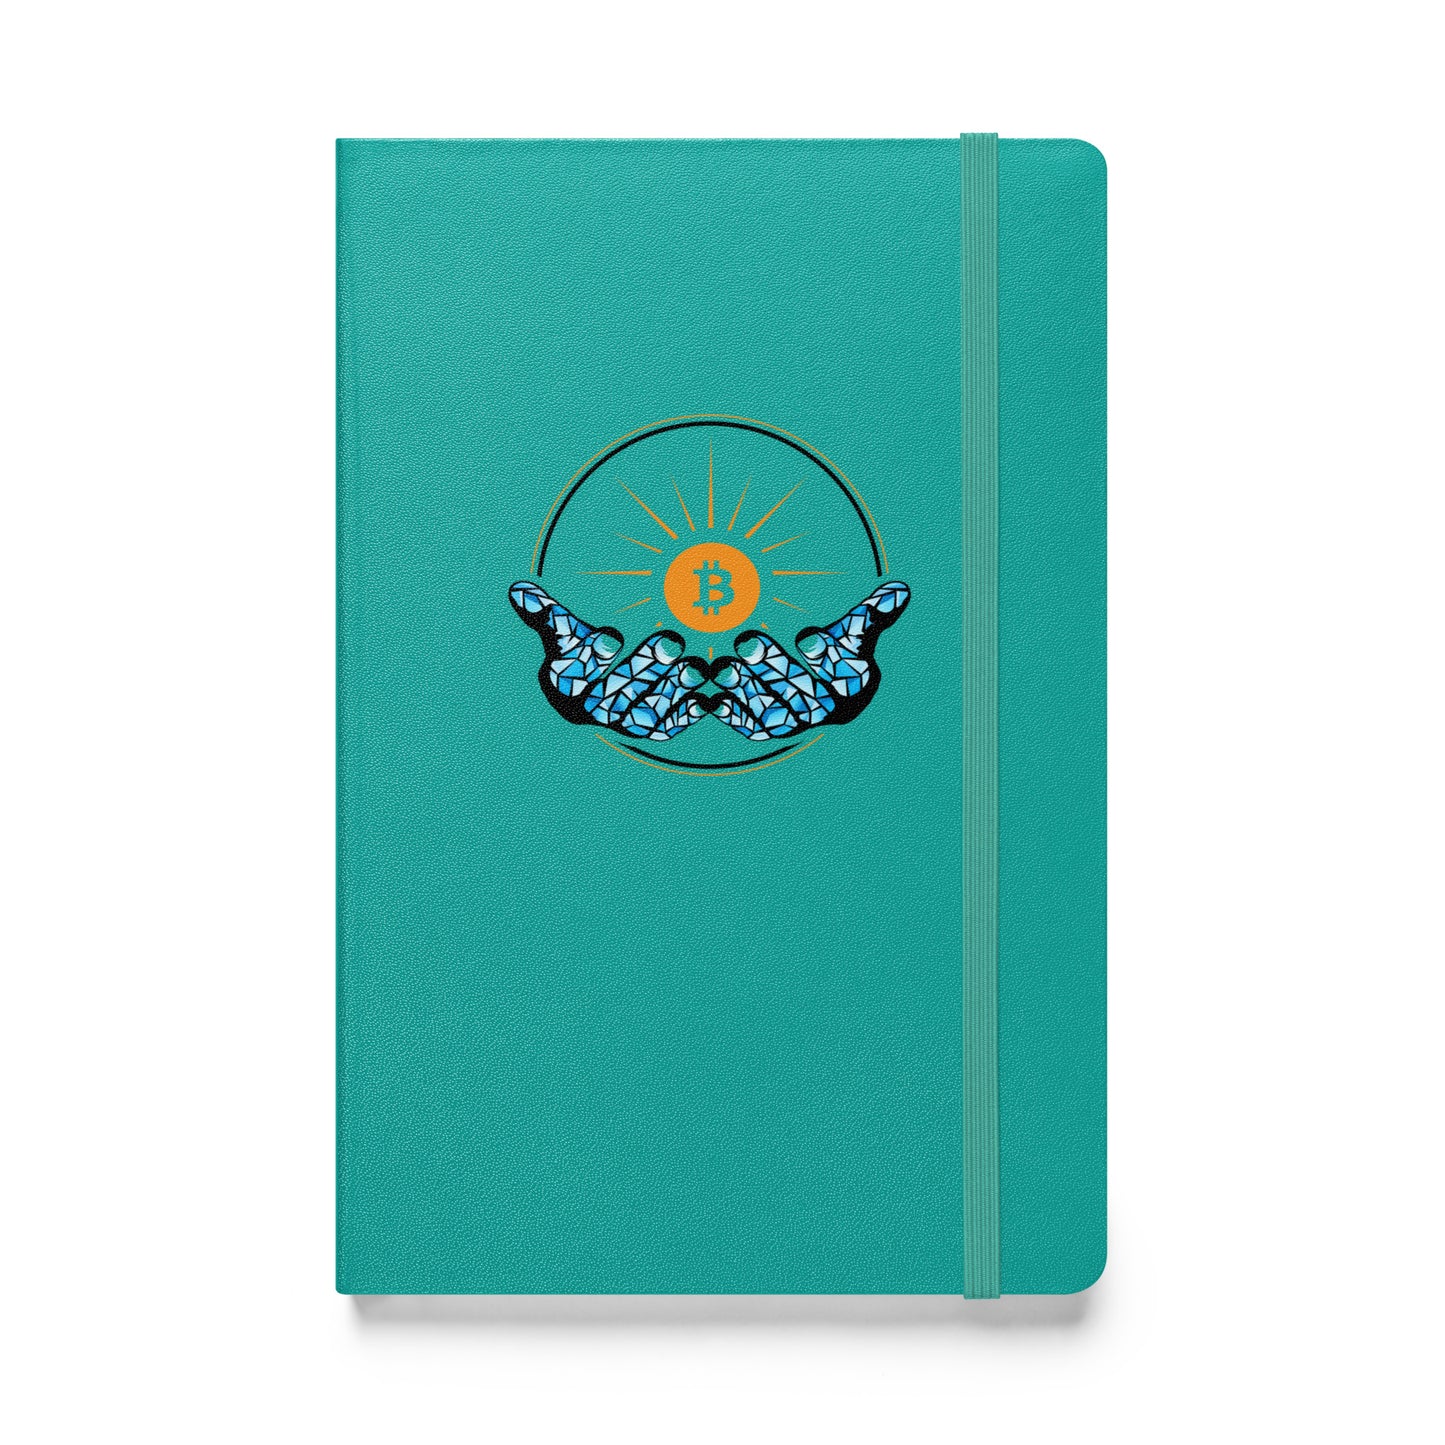 Diamond Hands Bitcoin Notebook